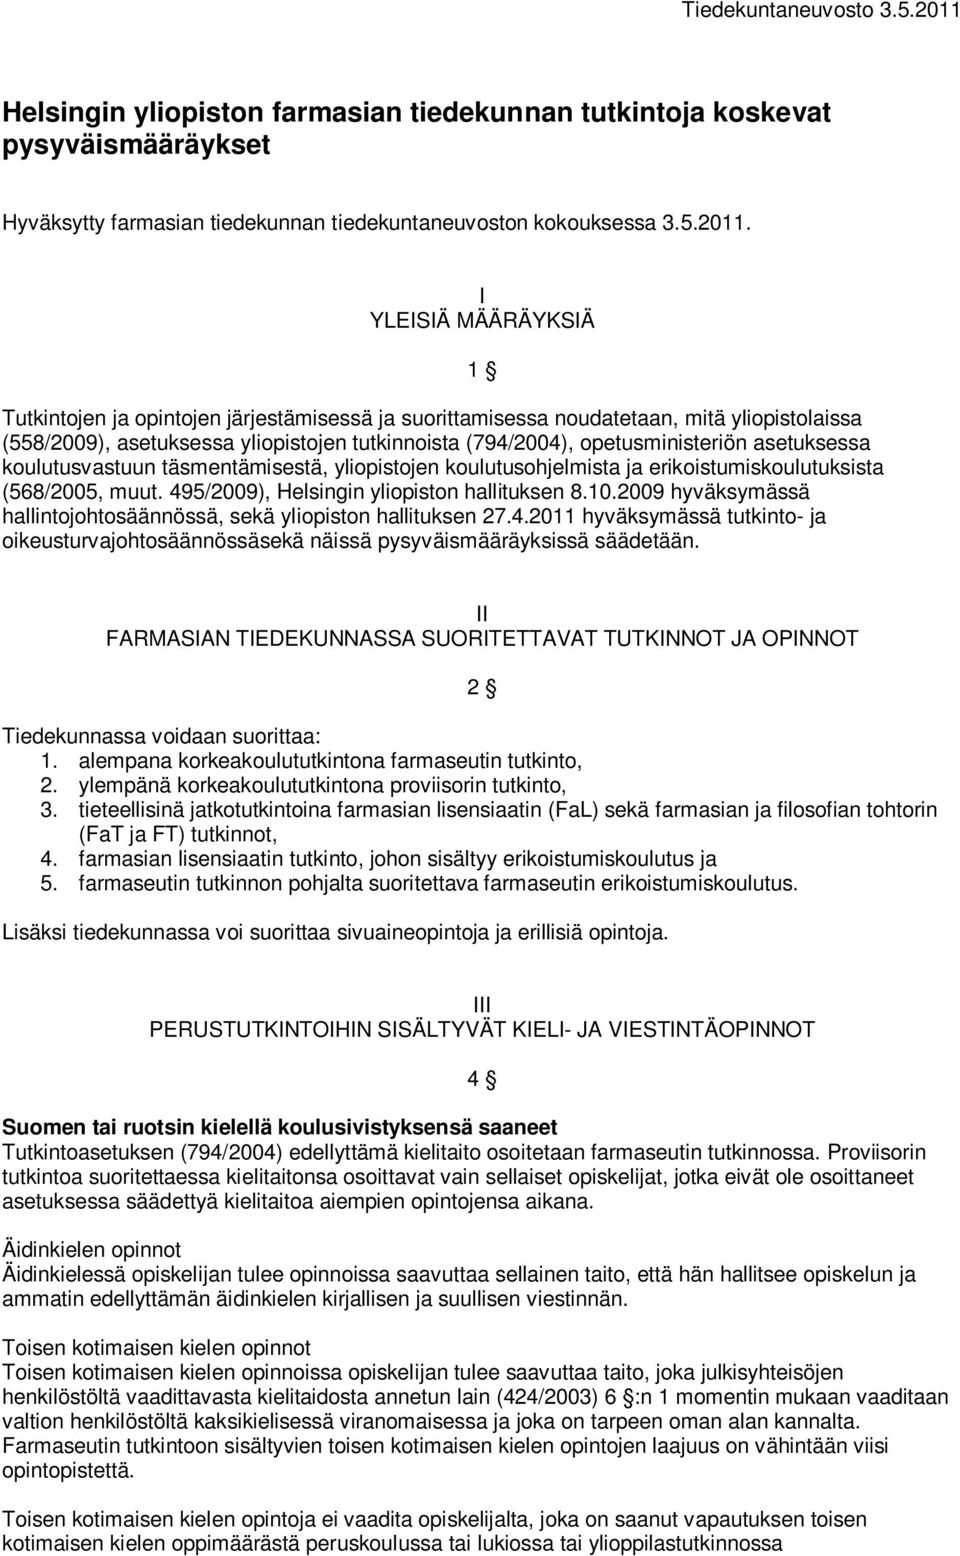 asetuksessa koulutusvastuun täsmentämisestä, yliopistojen koulutusohjelmista ja erikoistumiskoulutuksista (568/2005, muut. 495/2009), Helsingin yliopiston hallituksen 8.10.